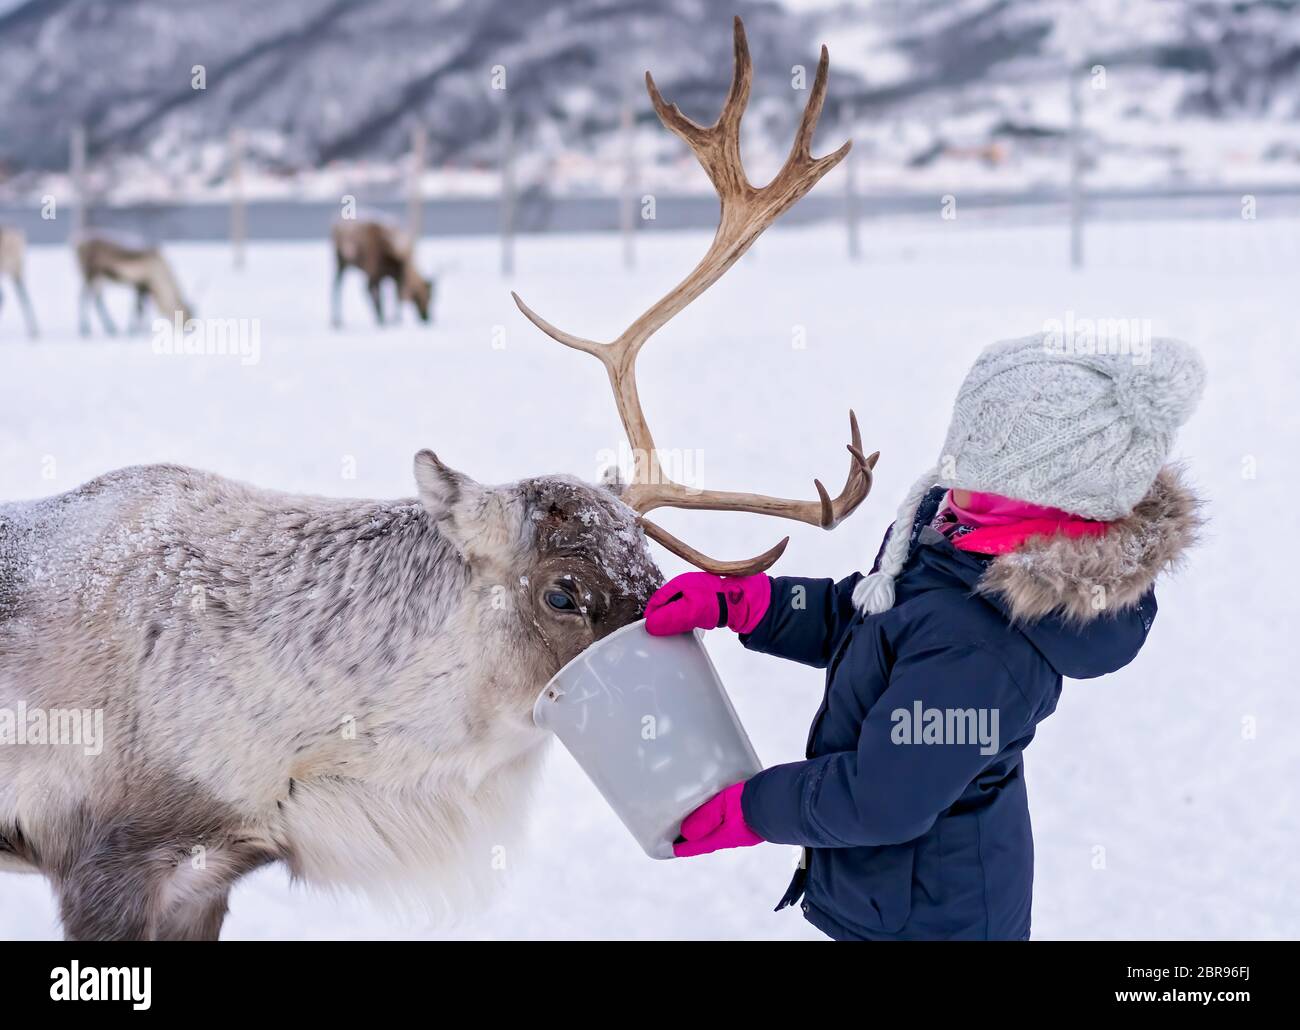 Bambina in una calda giacca invernale alimentando le renne in inverno, regione di Tromso, Norvegia settentrionale Foto Stock